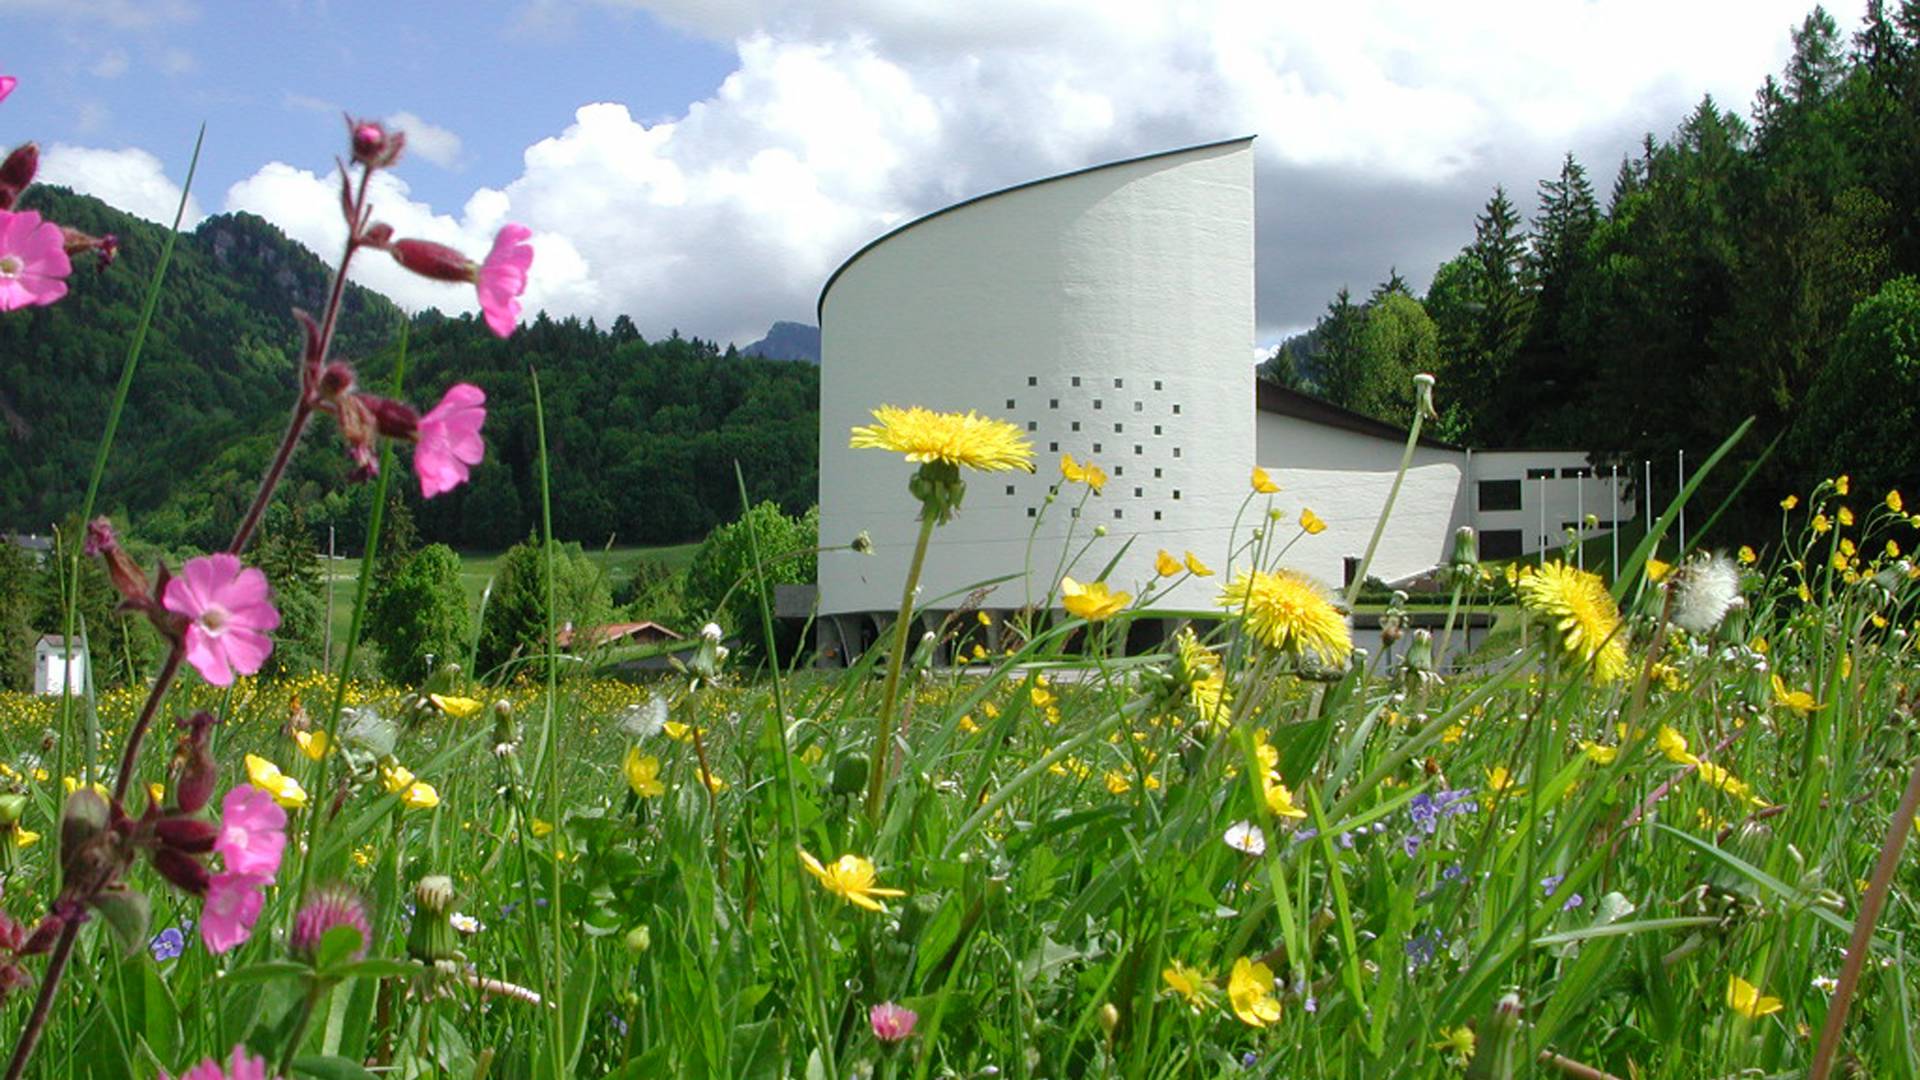 Blumen vor dem Passionsspielhaus Erl, Tirol